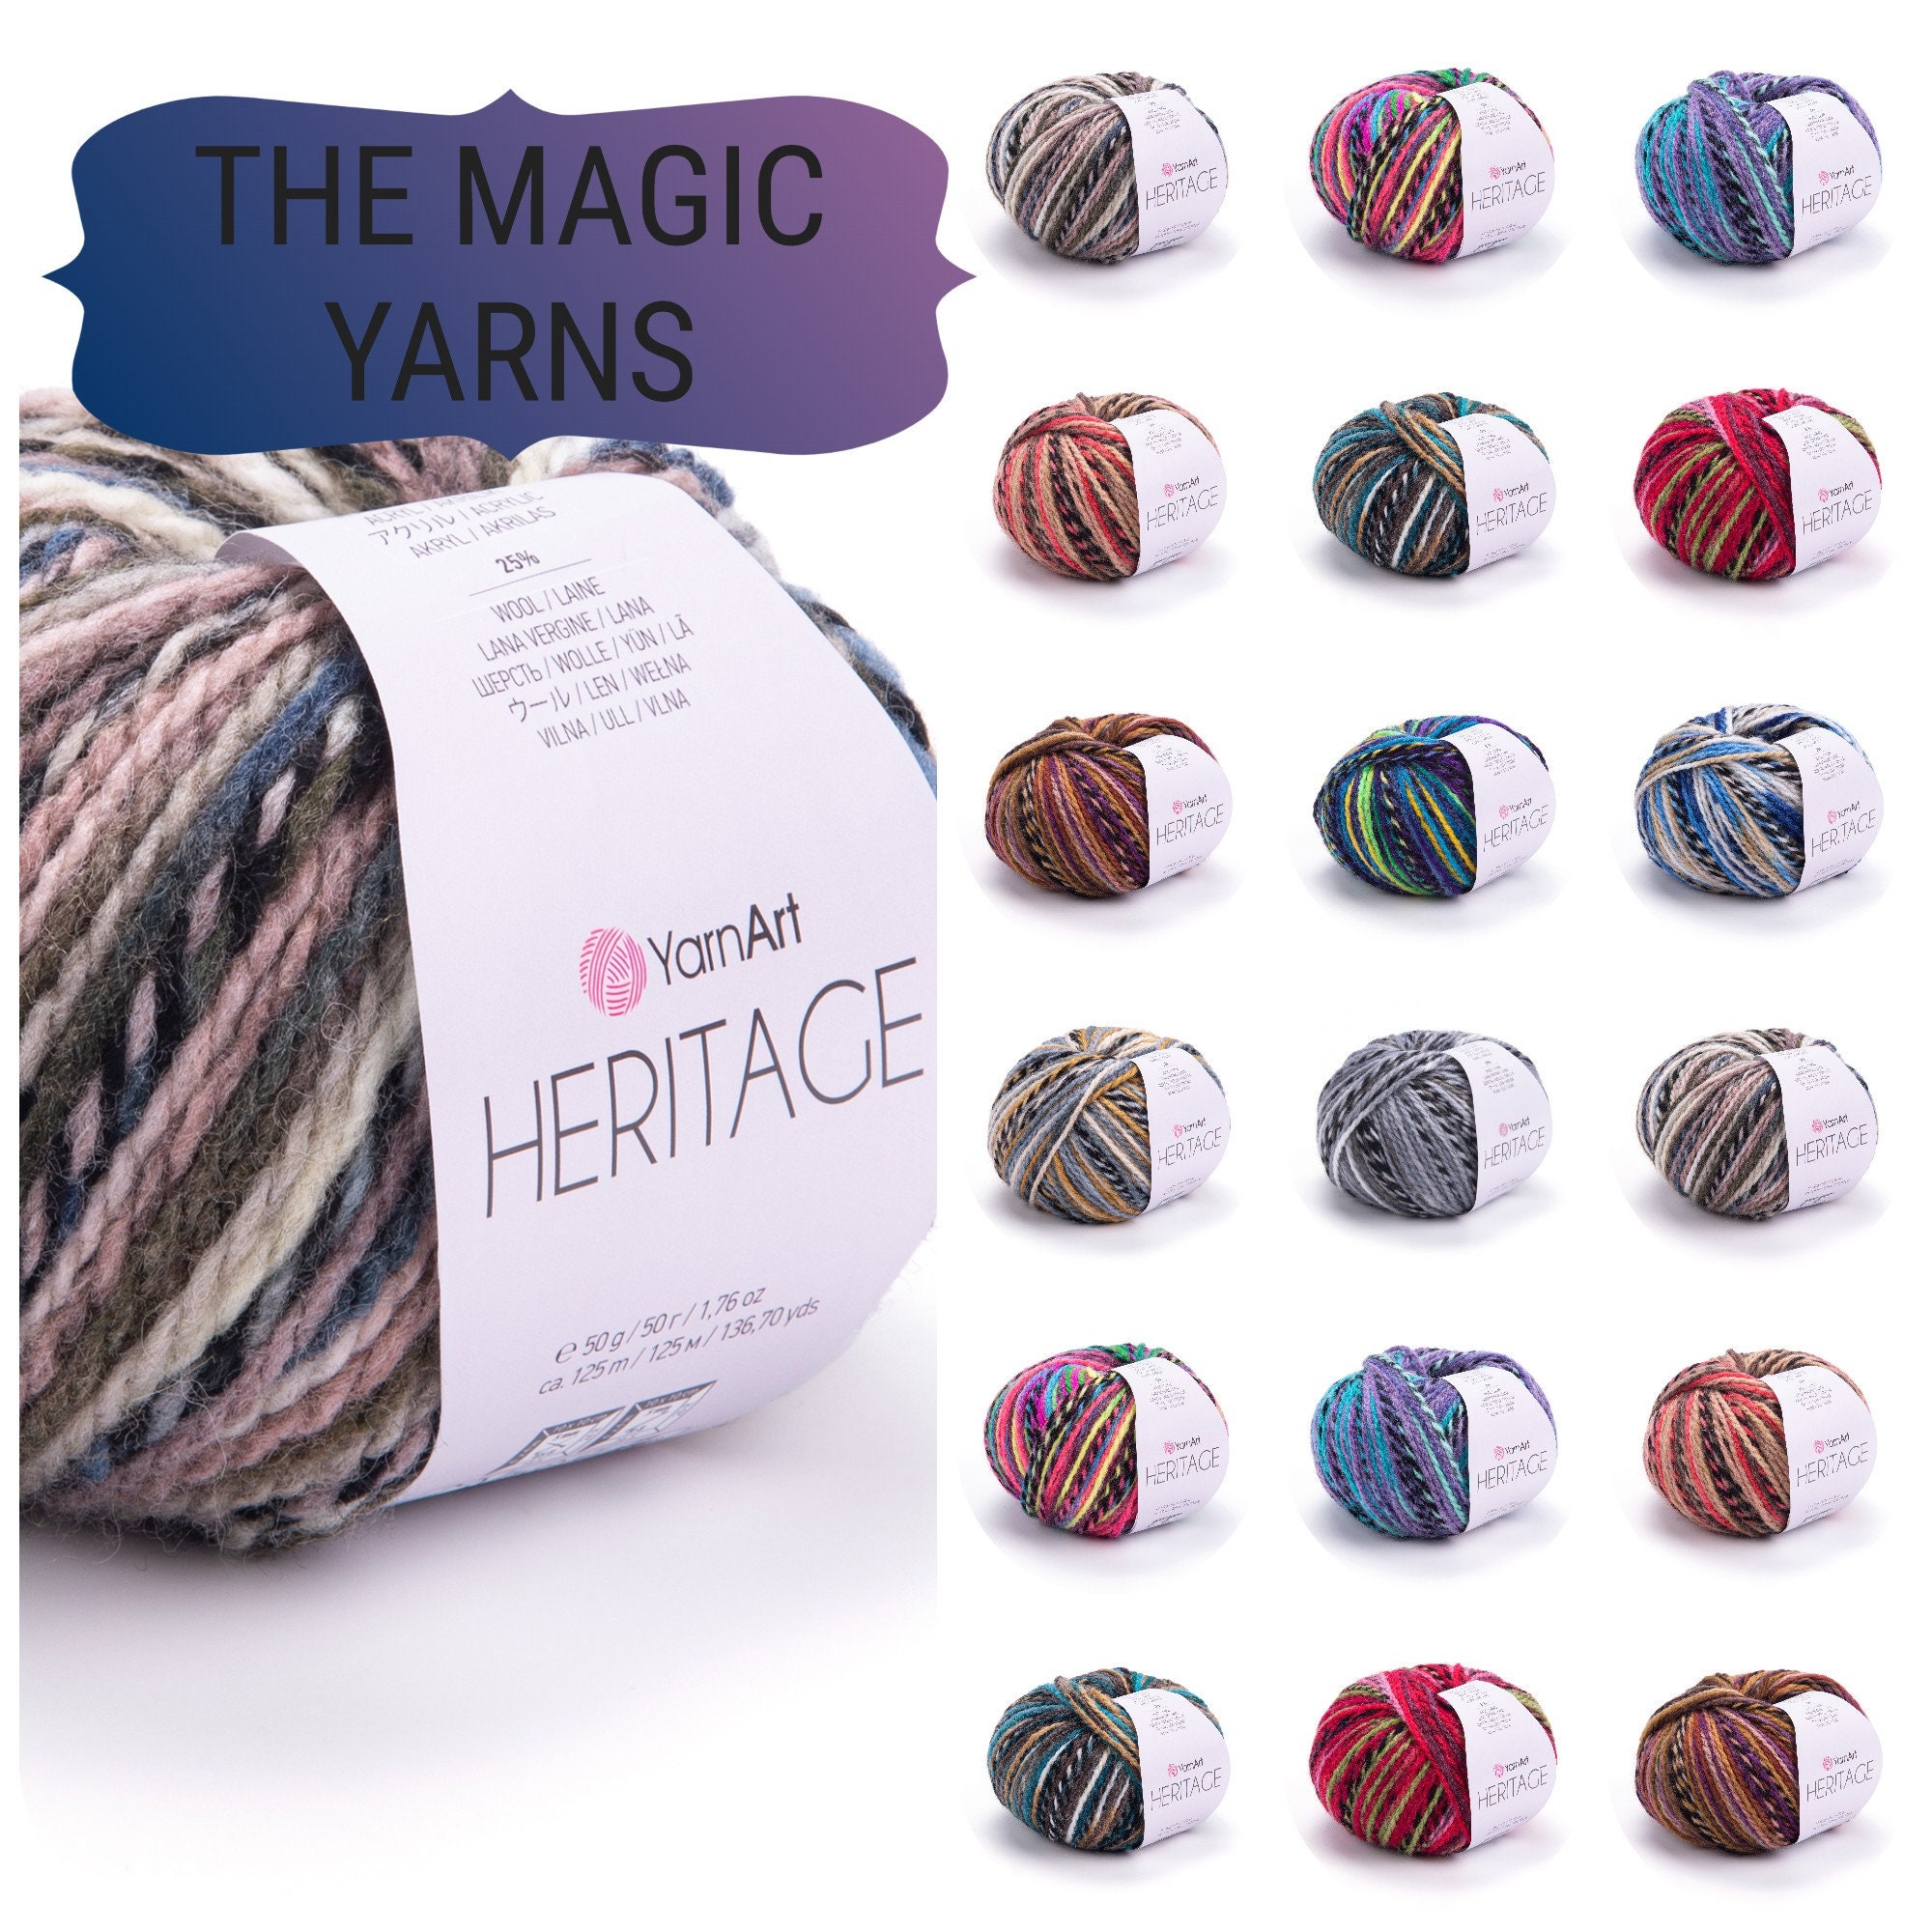 YARNART AMBIANCE Multicolor Knitting Yarn, Gradient Yarn, Wool Yarn,  Acrylic Yarn, Shawl Yarn, Soft Yarn, 20% Wool, 3.52 Oz, 273.40 Yds 